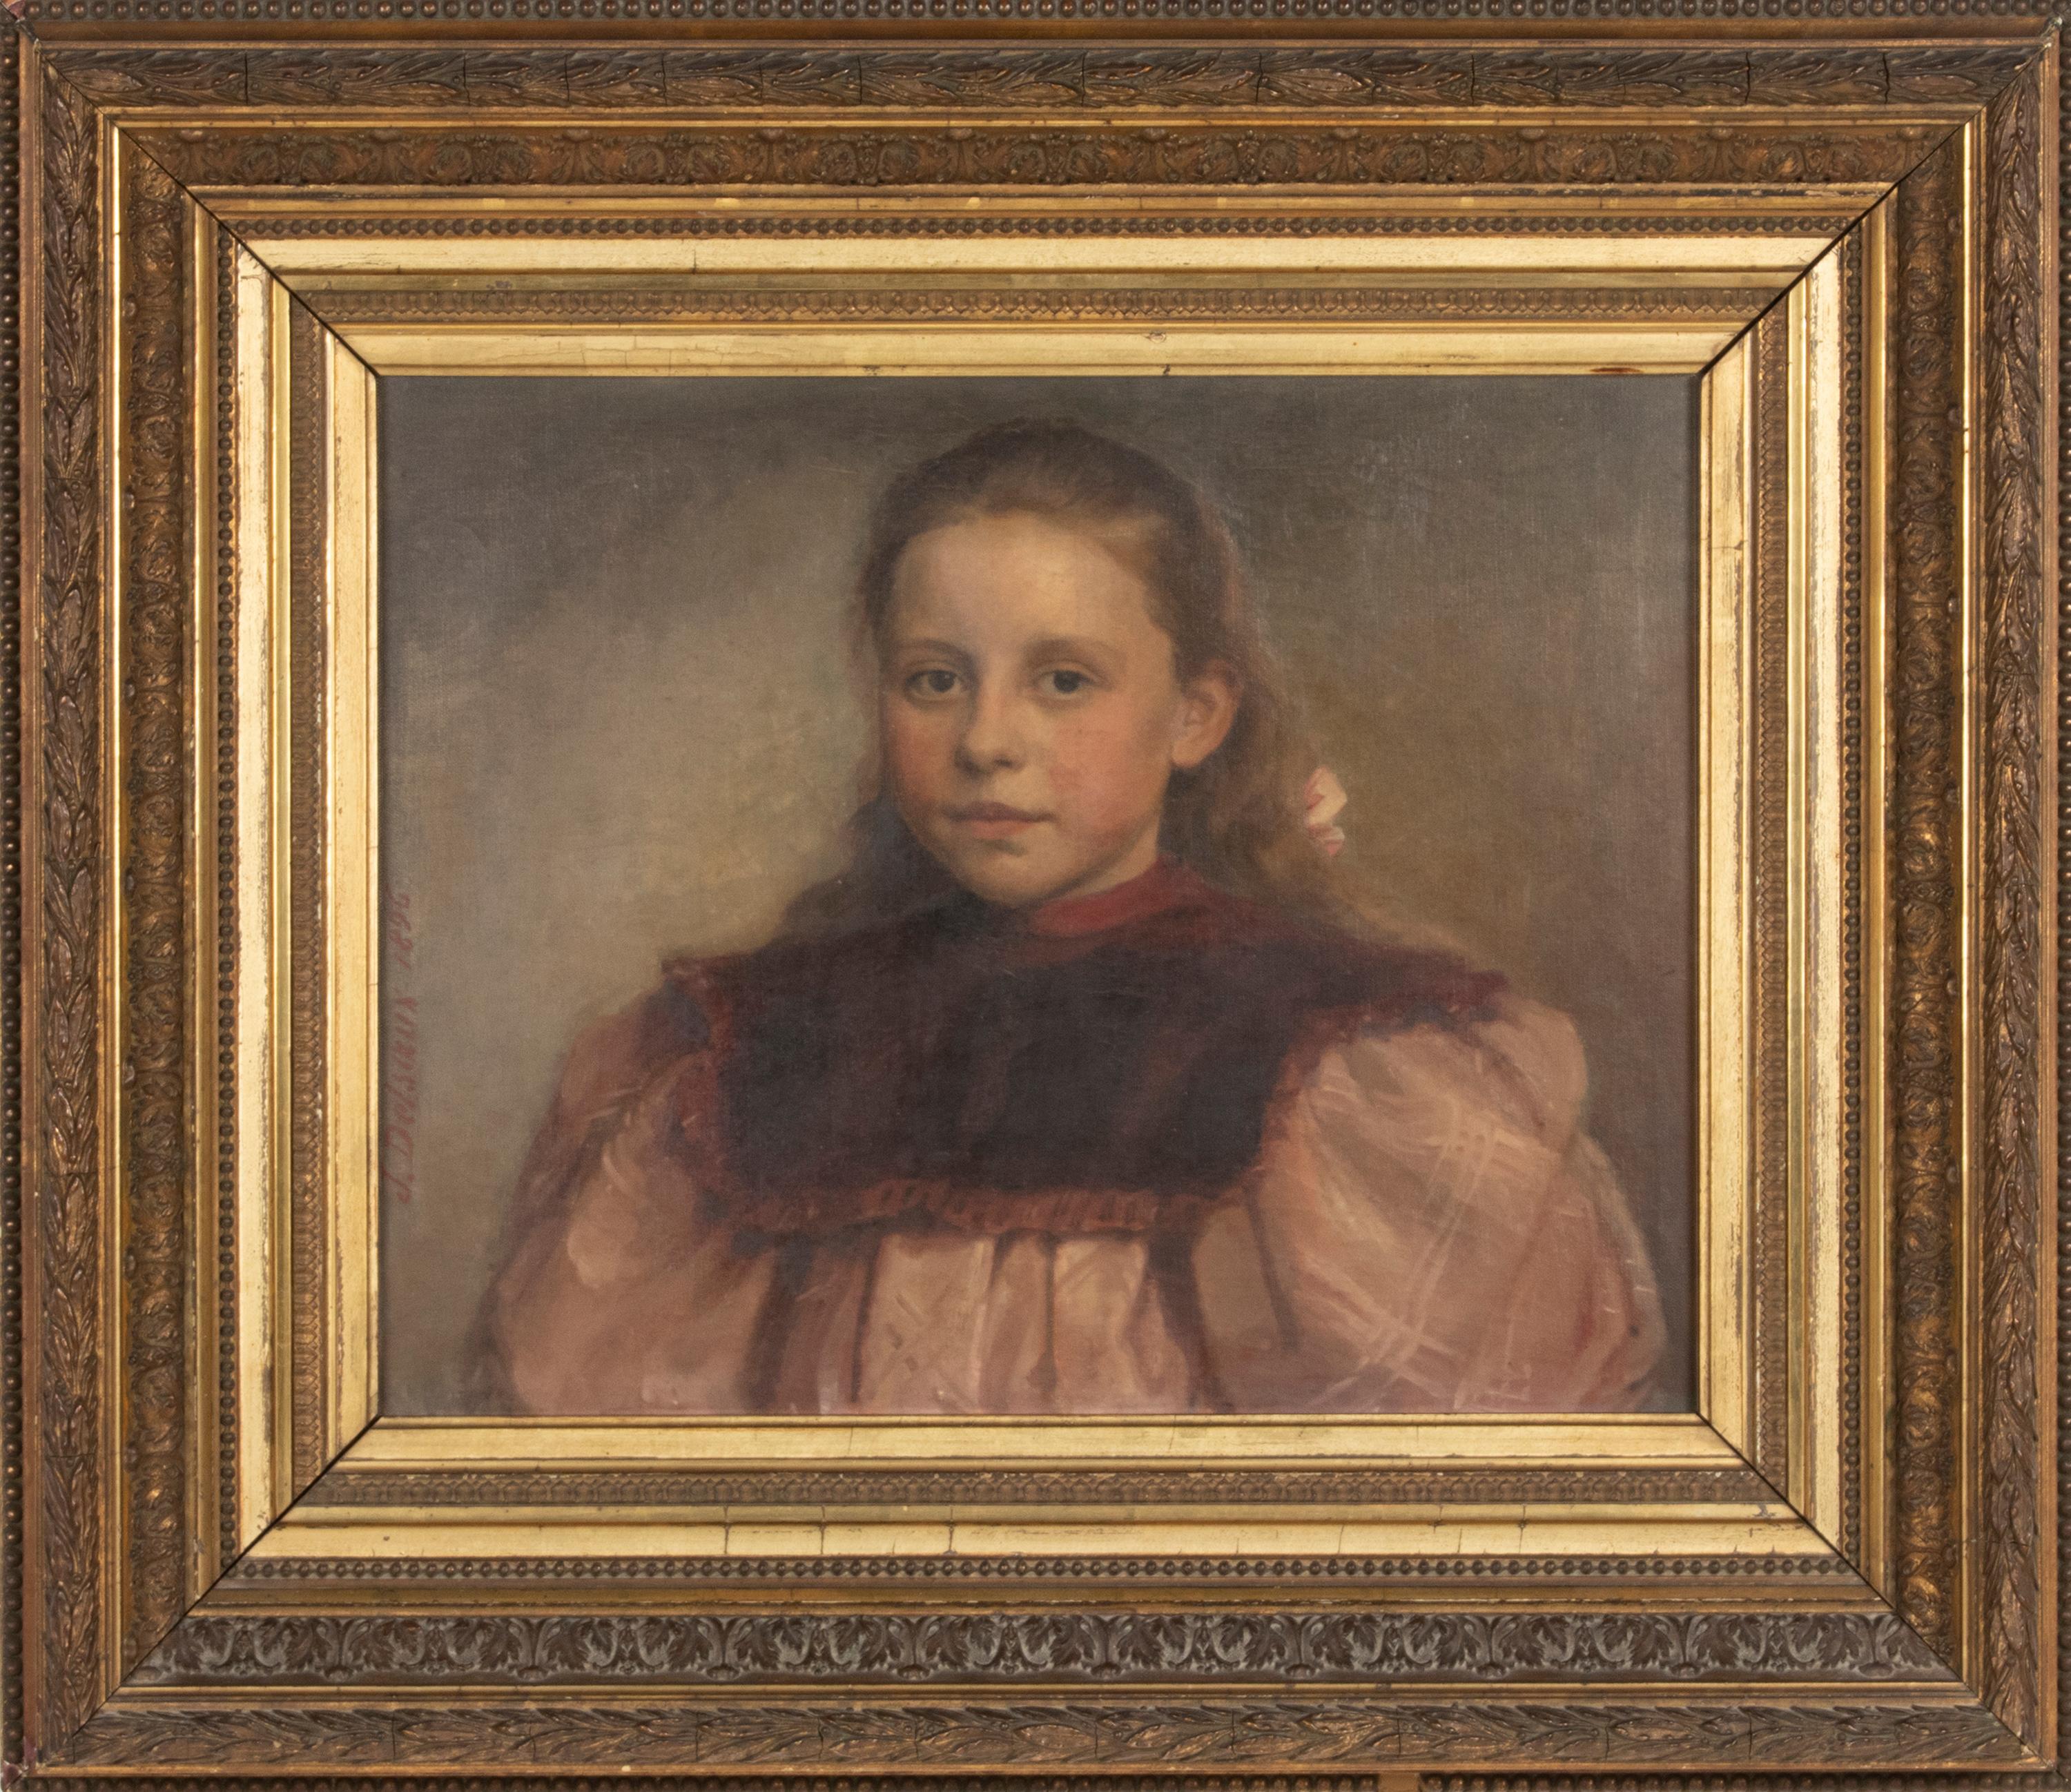 Jeremie DELSAUX. Glain, Belgique 1852 - Liège 1927.
Peinture à l'huile ancienne sur toile, portrait d'une jeune fille avec un nœud de cheveux. Elle a été peinte par Jérémie DELSAUX et datée de 1896. Huile sur toile. Dans un cadre en bois avec